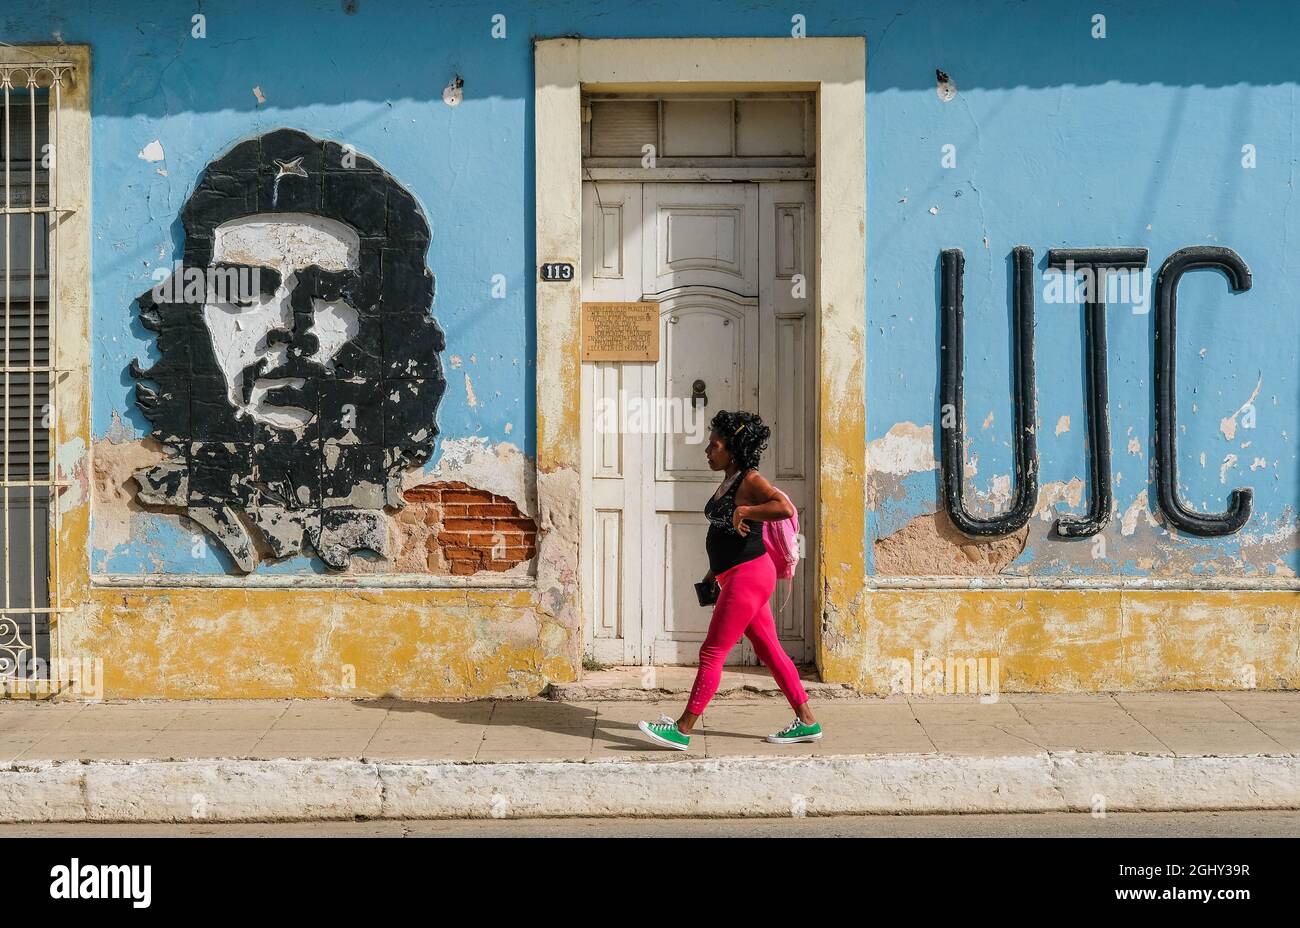 Una donna cammina davanti a un'immagine di che Guevara a Trinidad, Cuba. Foto Stock